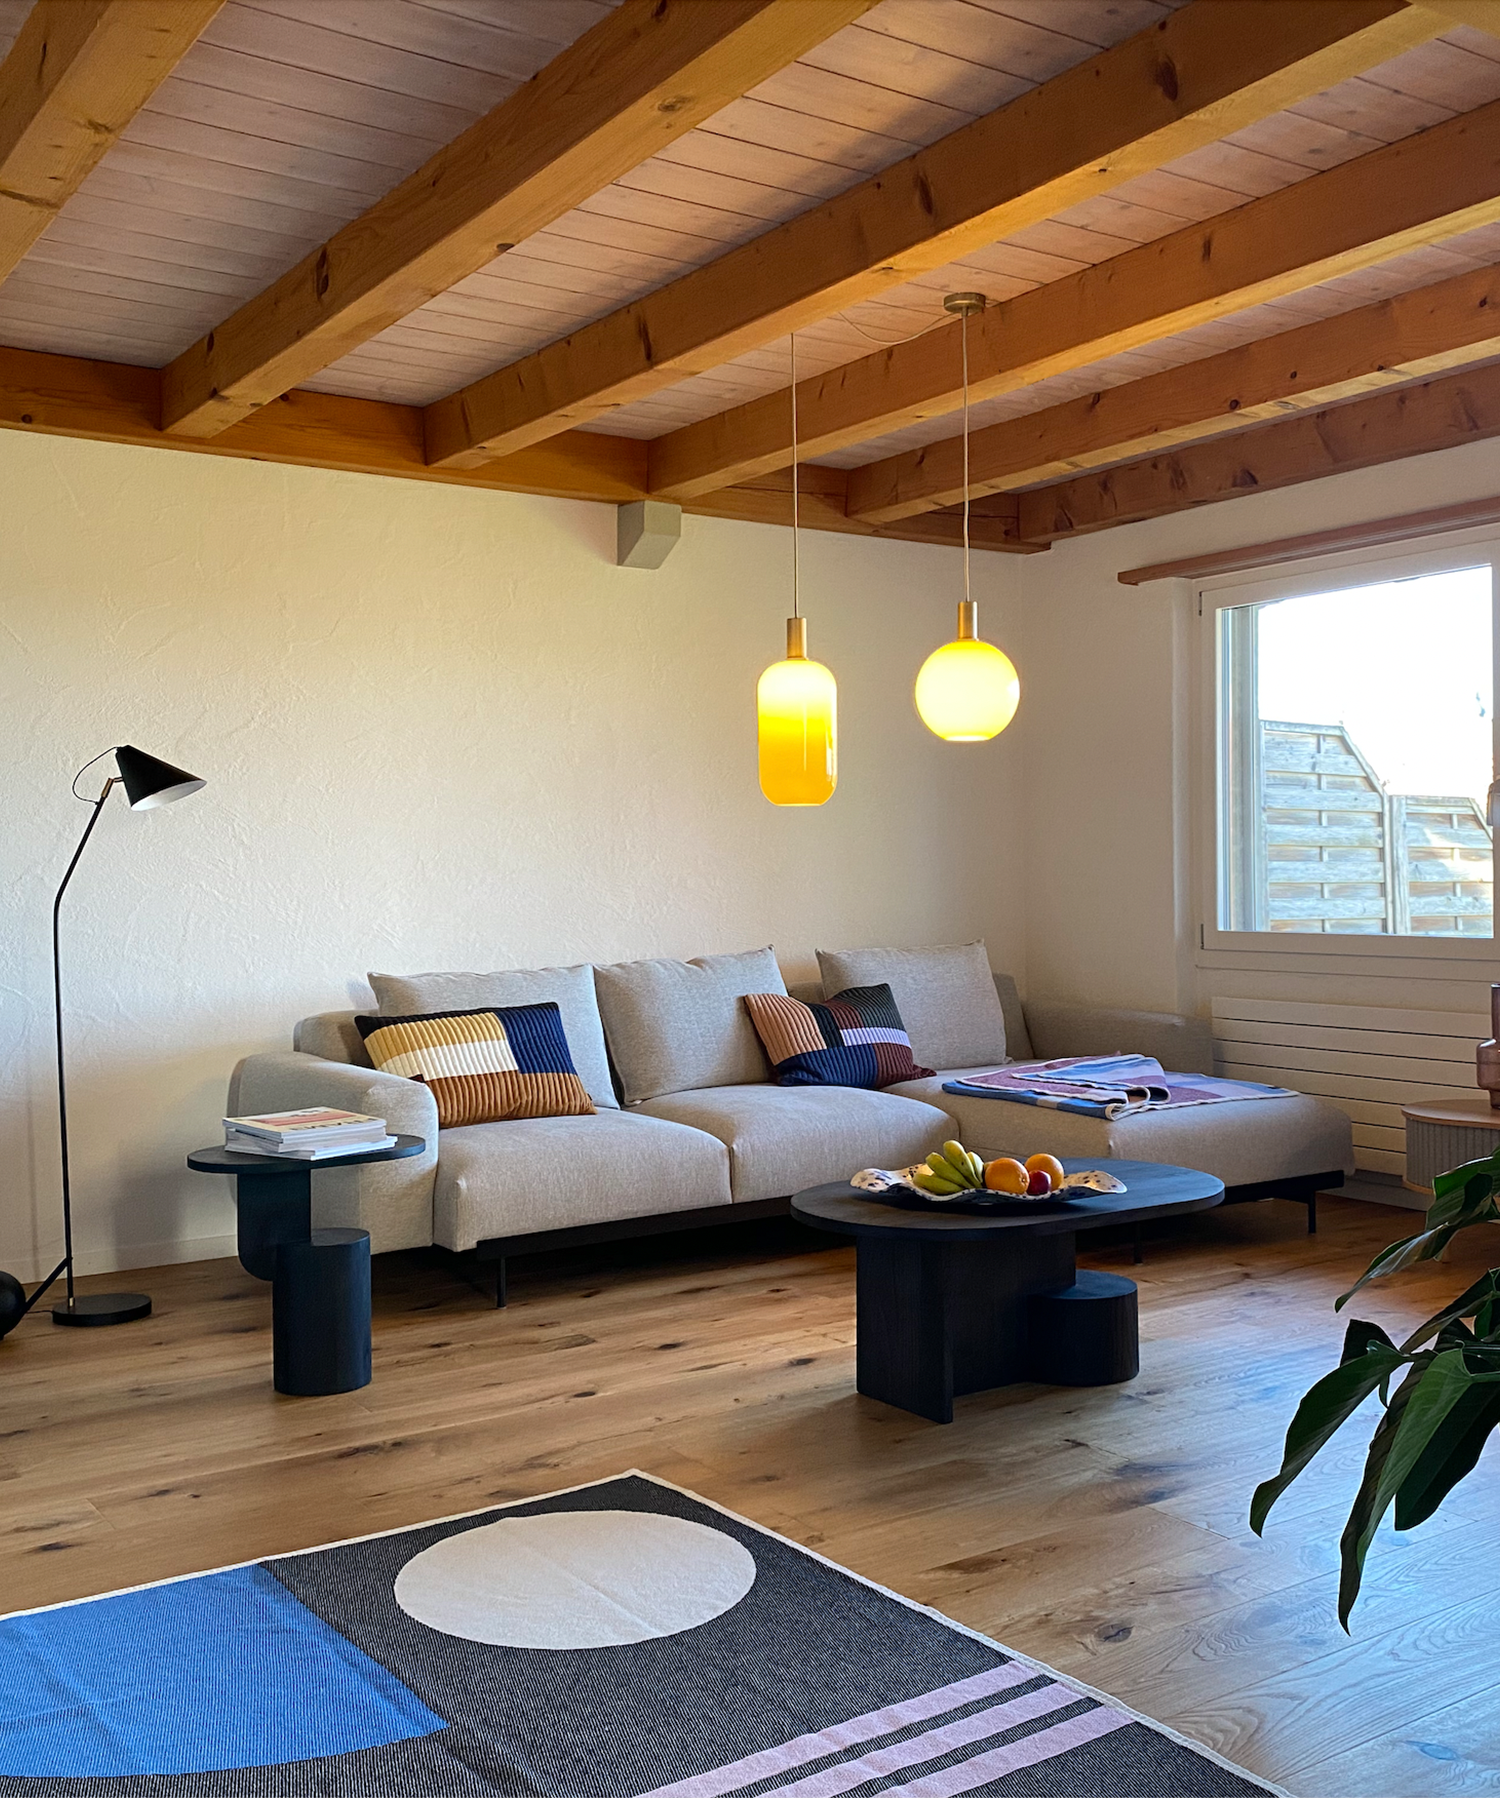 Wohnzimmer skandinavisch eingerichtet, Produkte von Muuto, Ferm Living und House Doctor